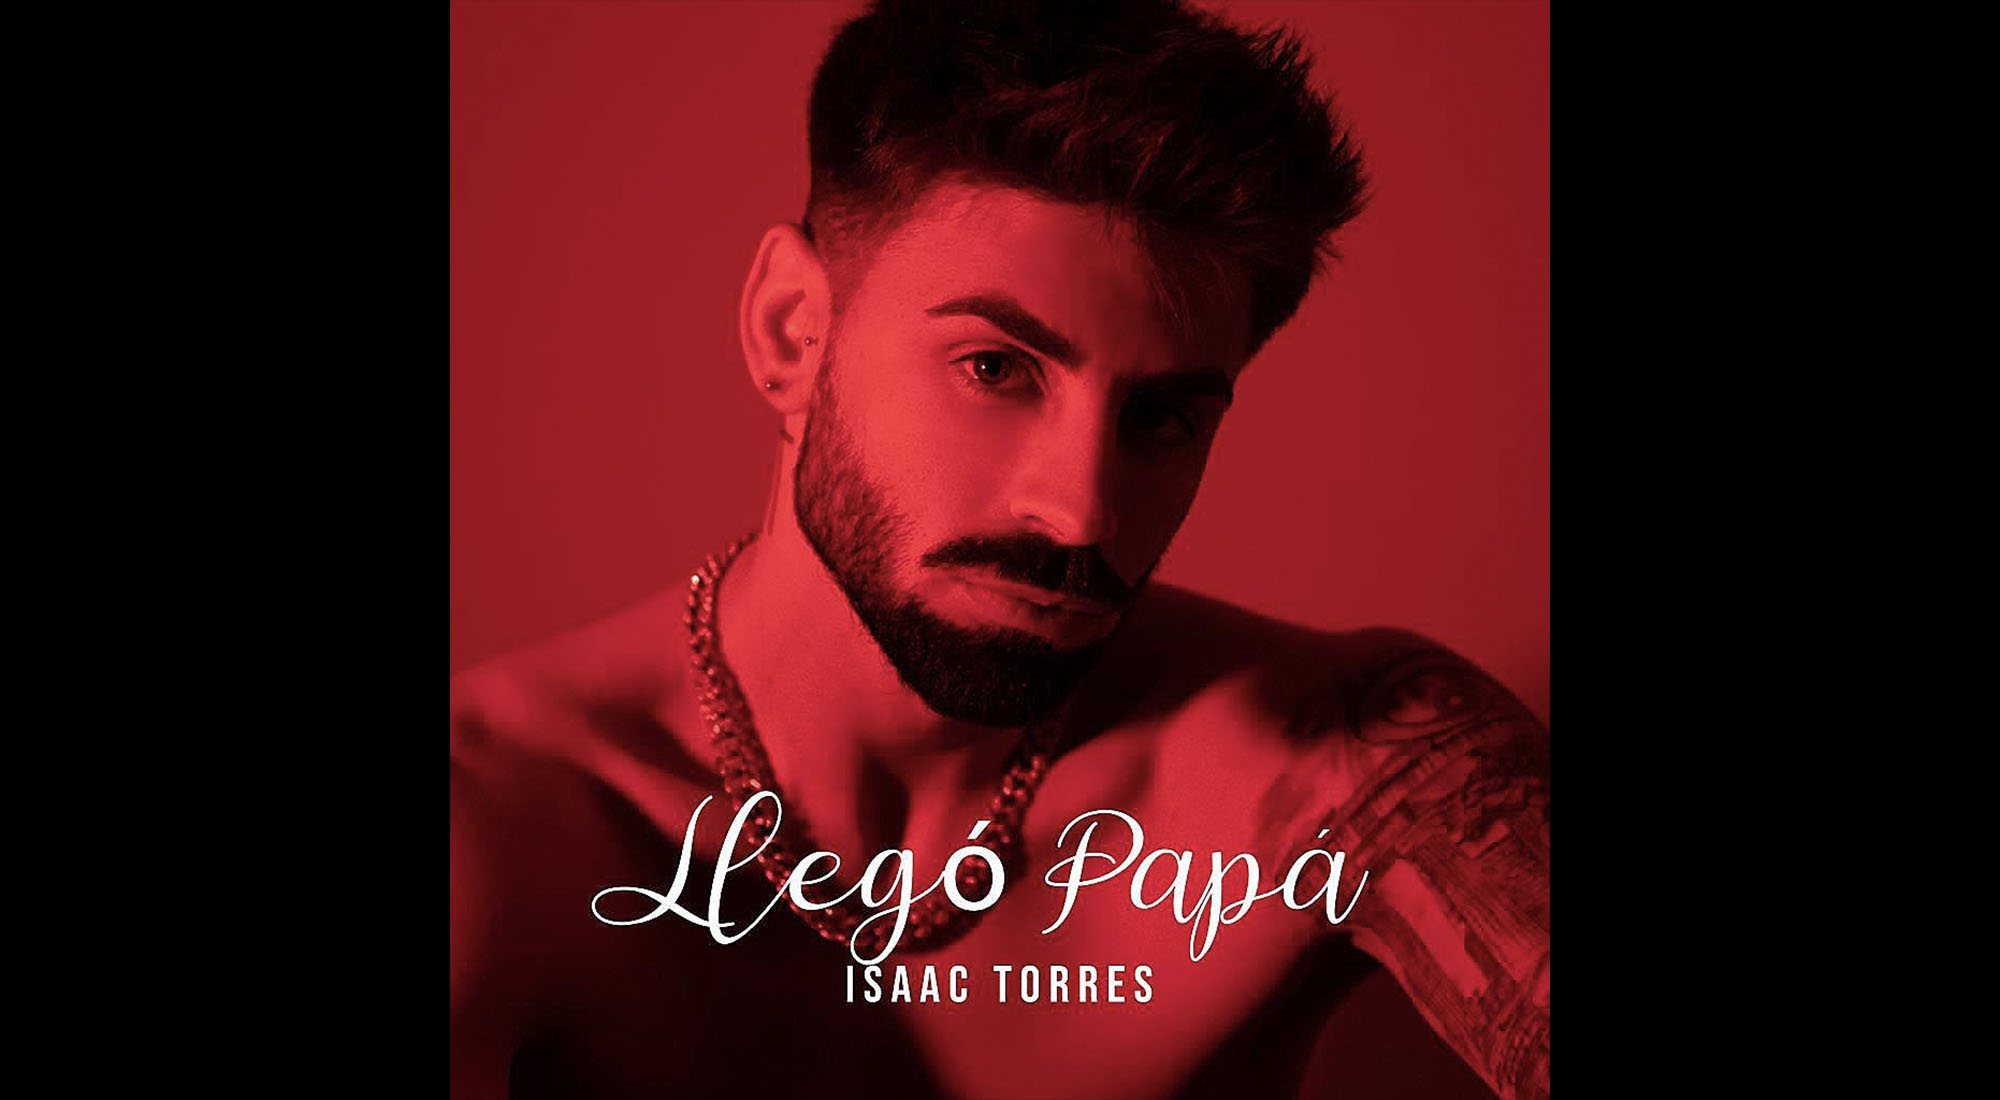 Portada de "Llegó Papá", single de Isaac Torres